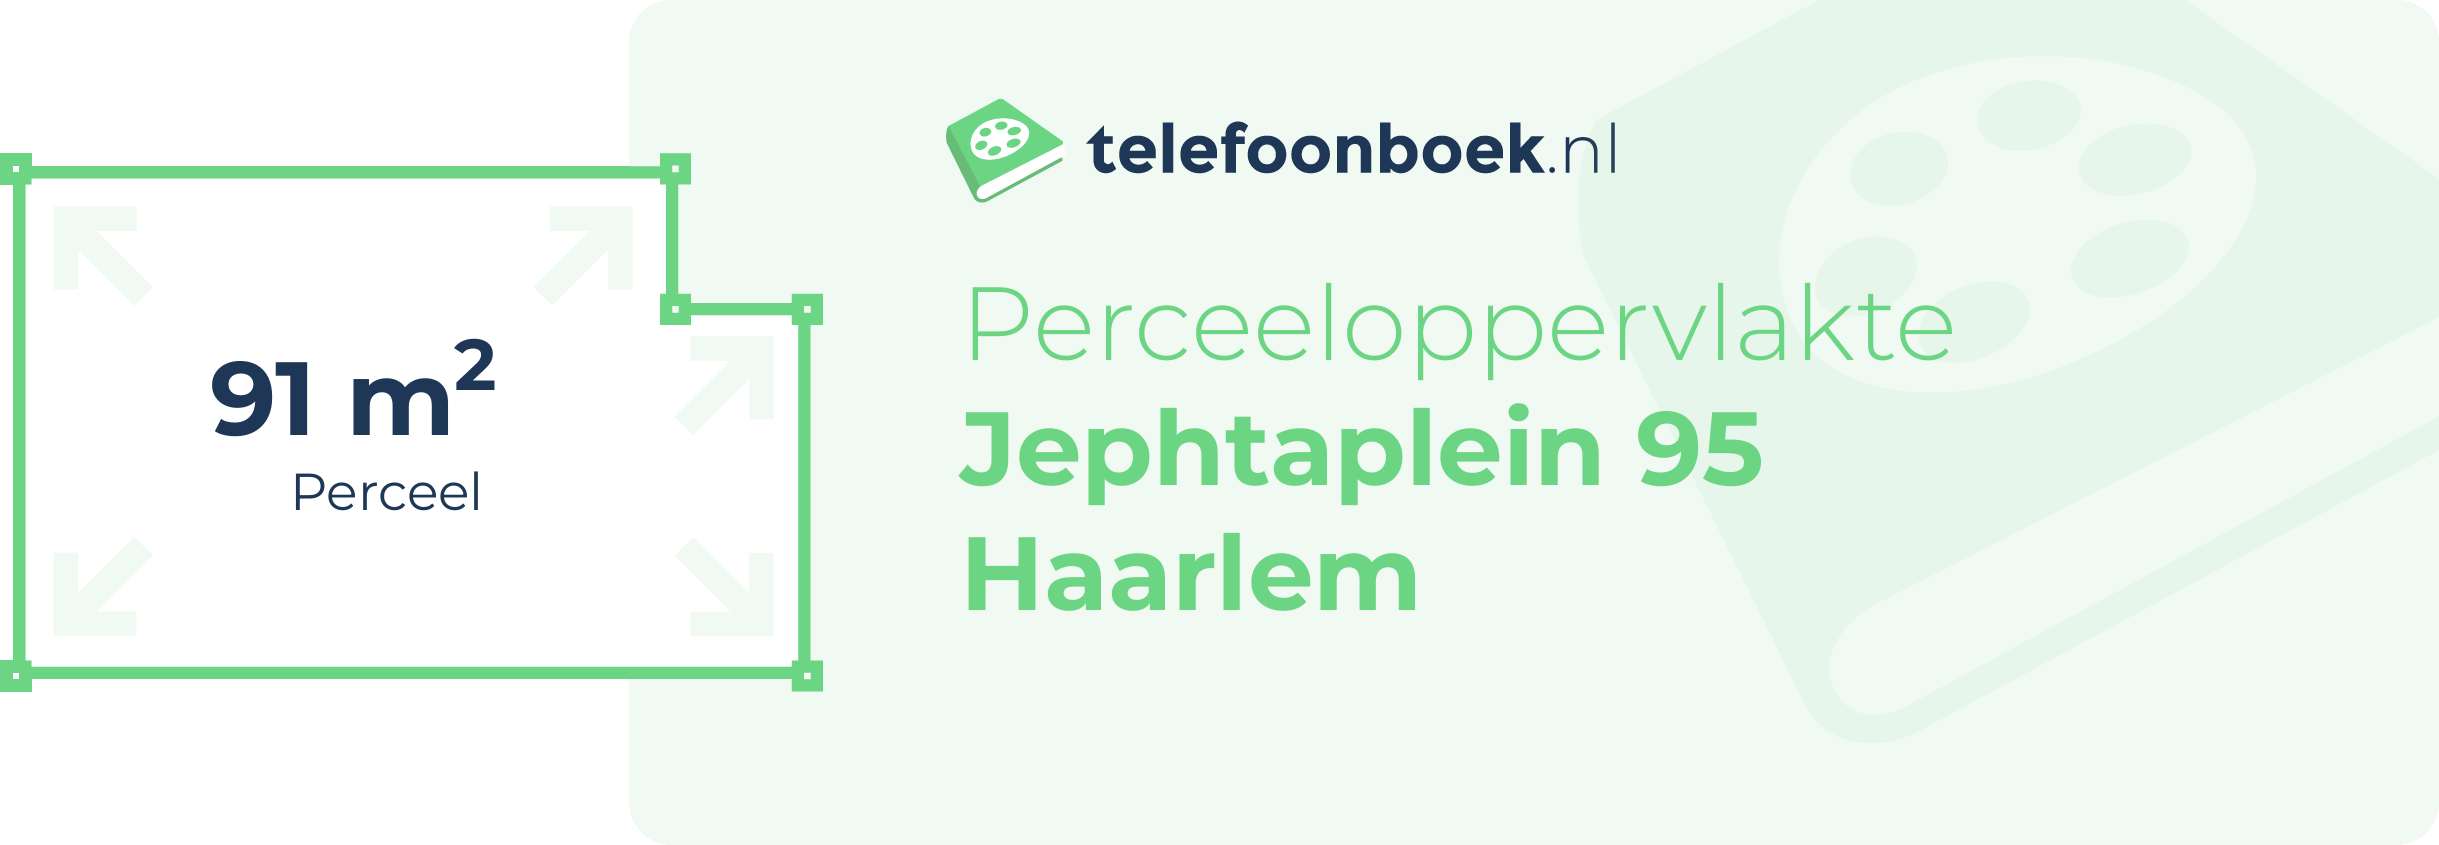 Perceeloppervlakte Jephtaplein 95 Haarlem